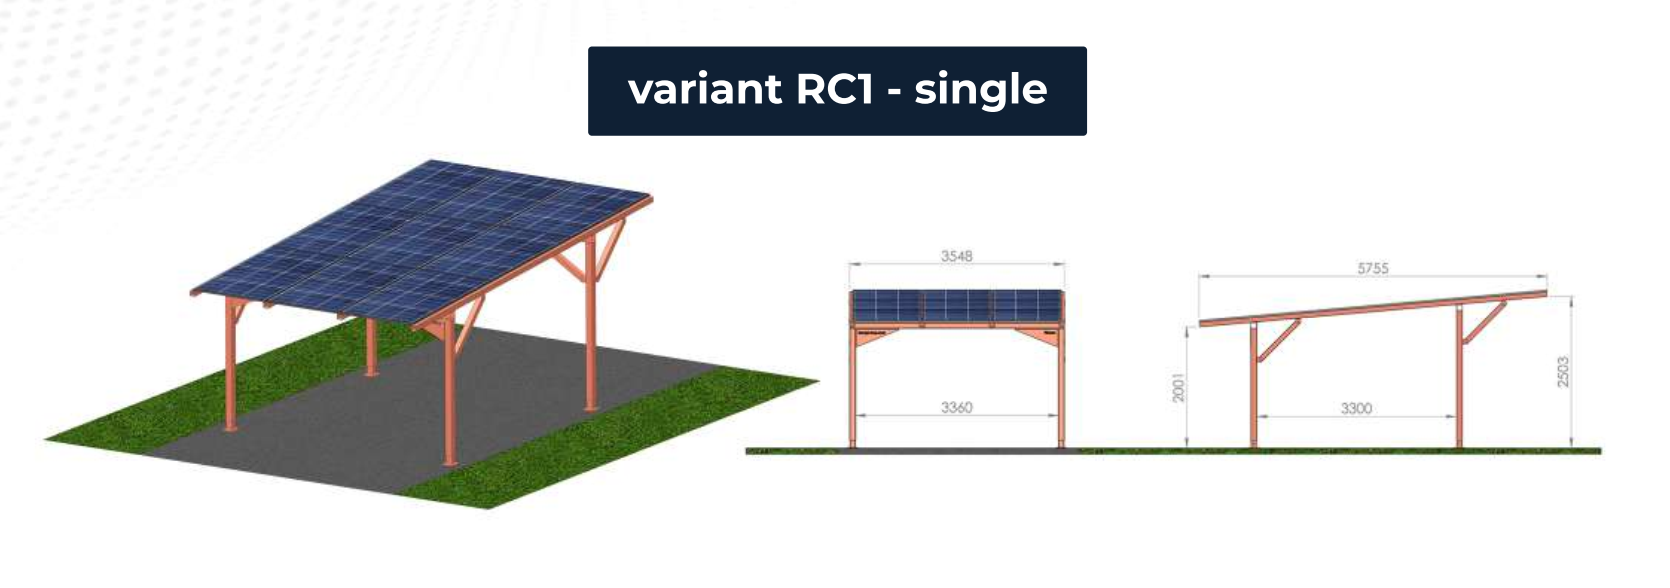 CARPORT - bezpečný přístřešek pro vozidla s výhodou dobíjení solární energií ve variantě RC1 - pro jedno vozidlo